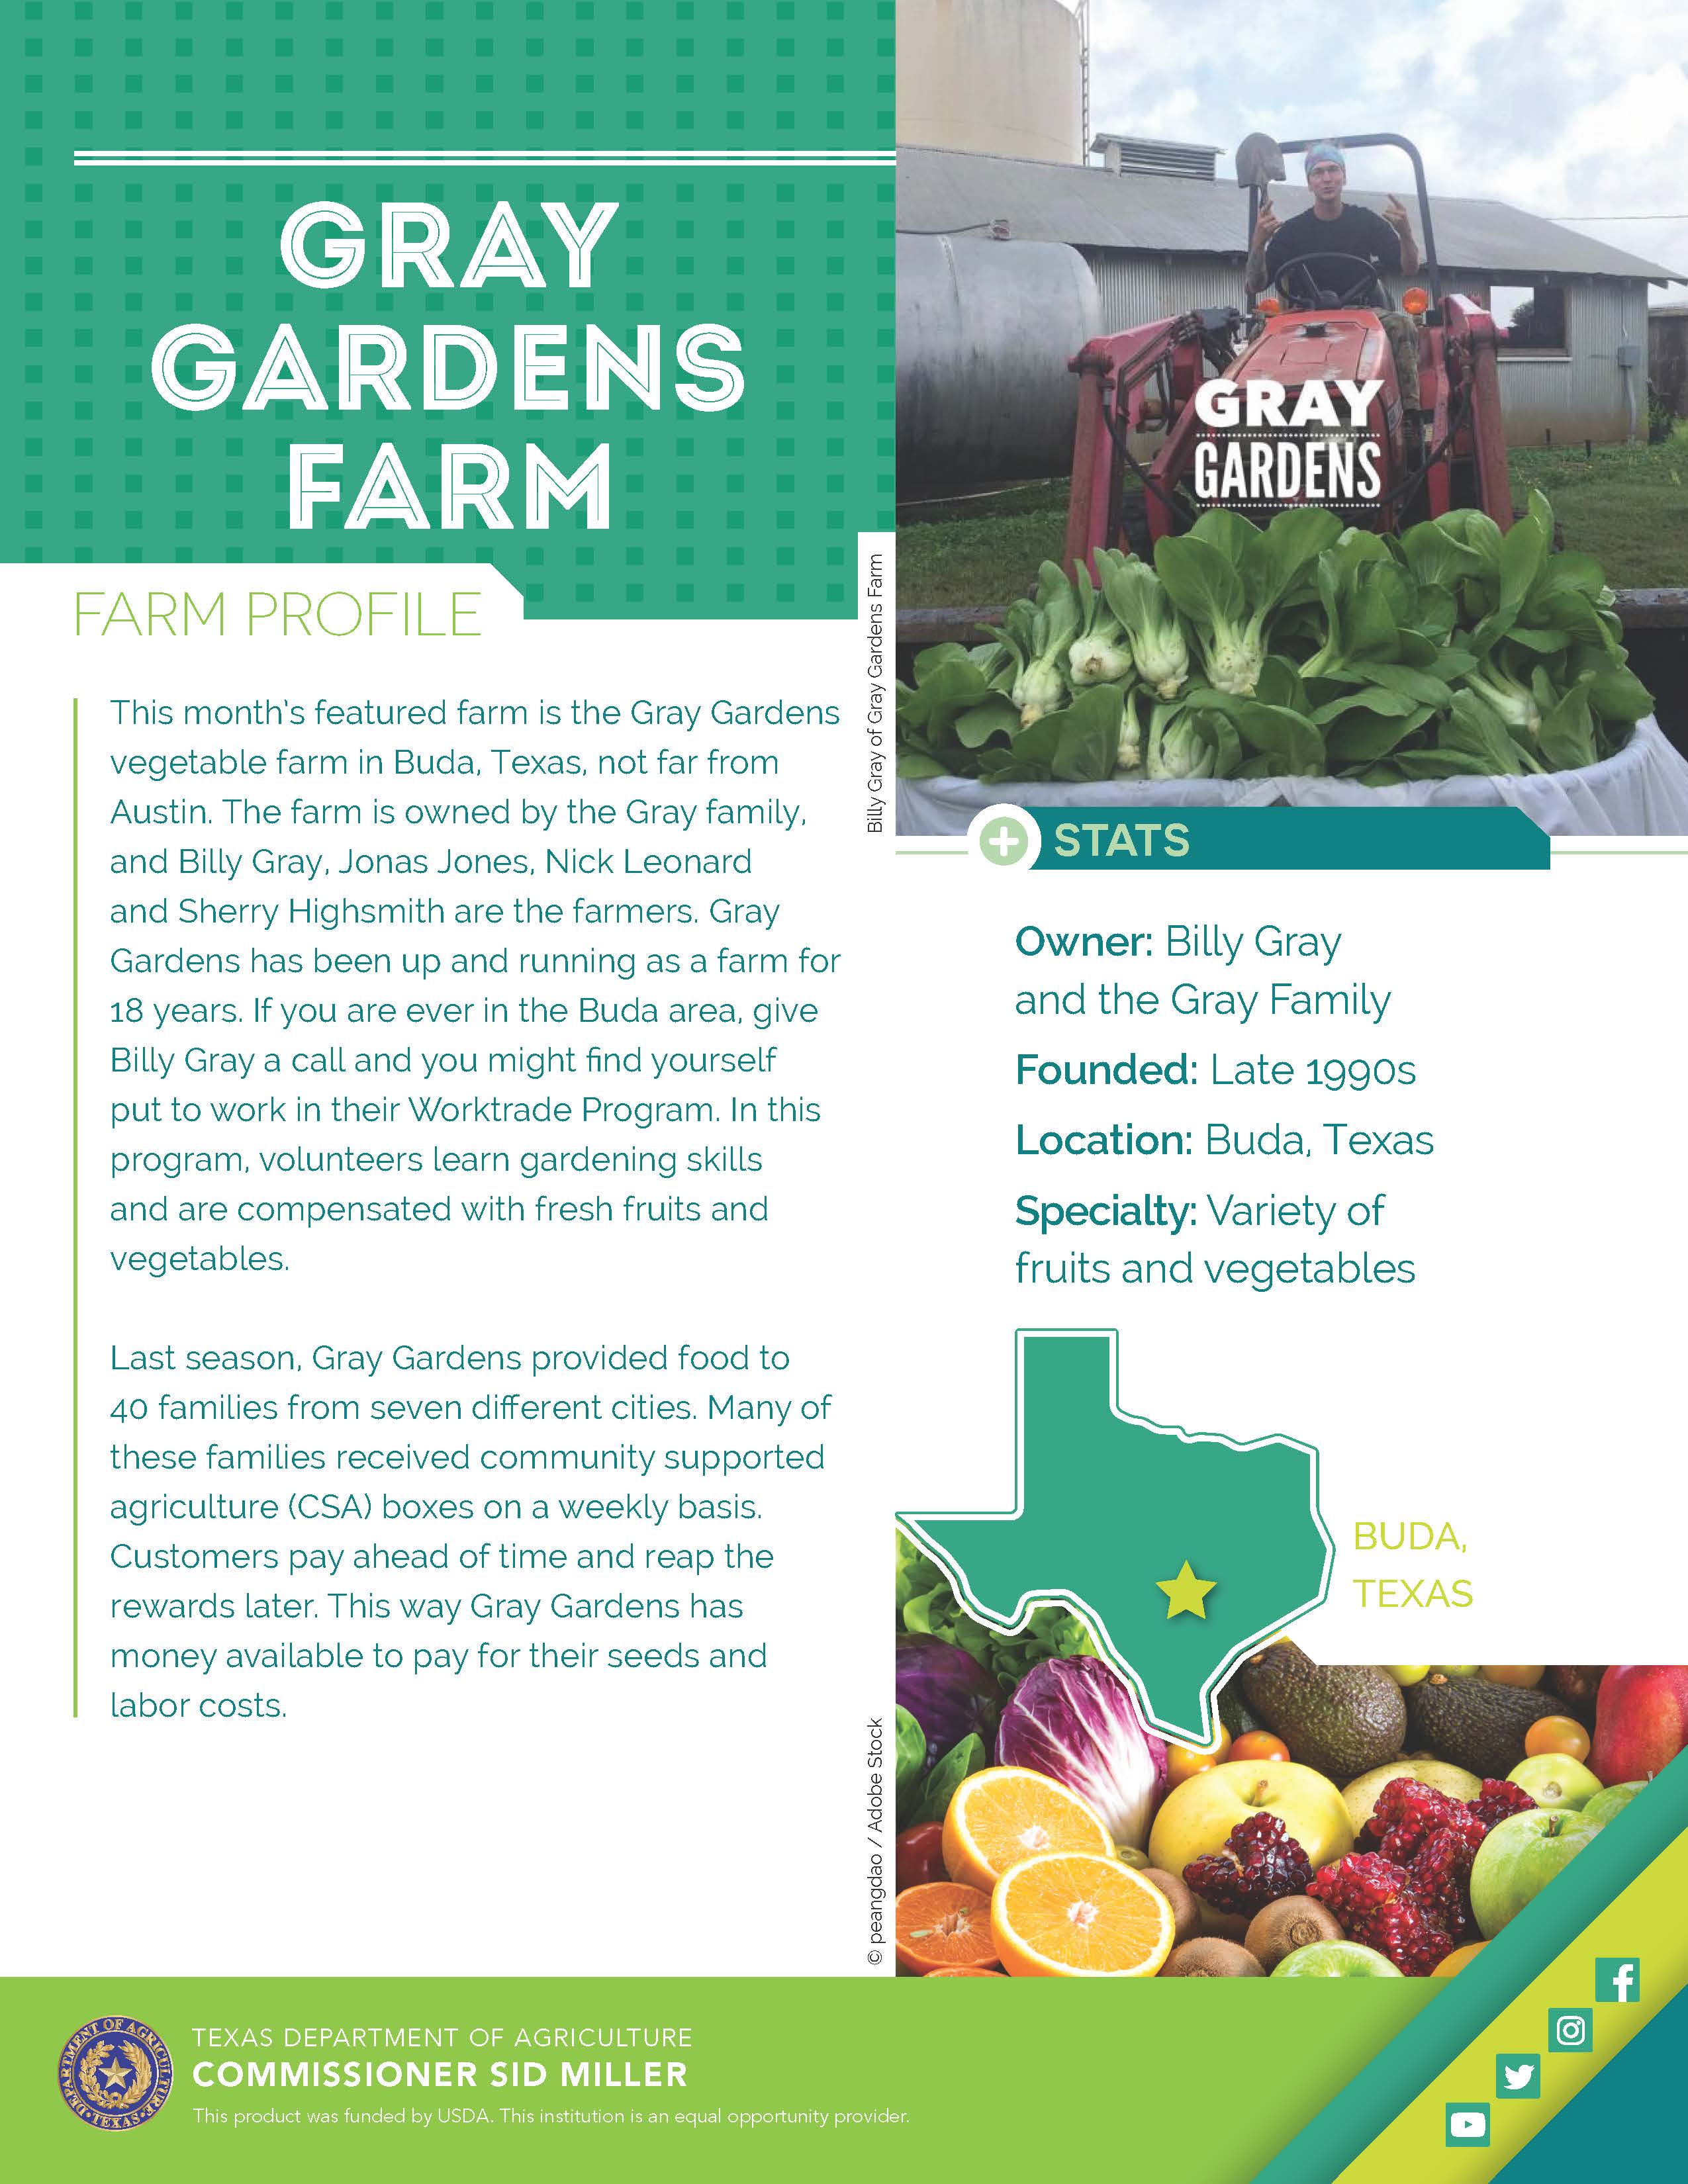 Gray Gardens Farm